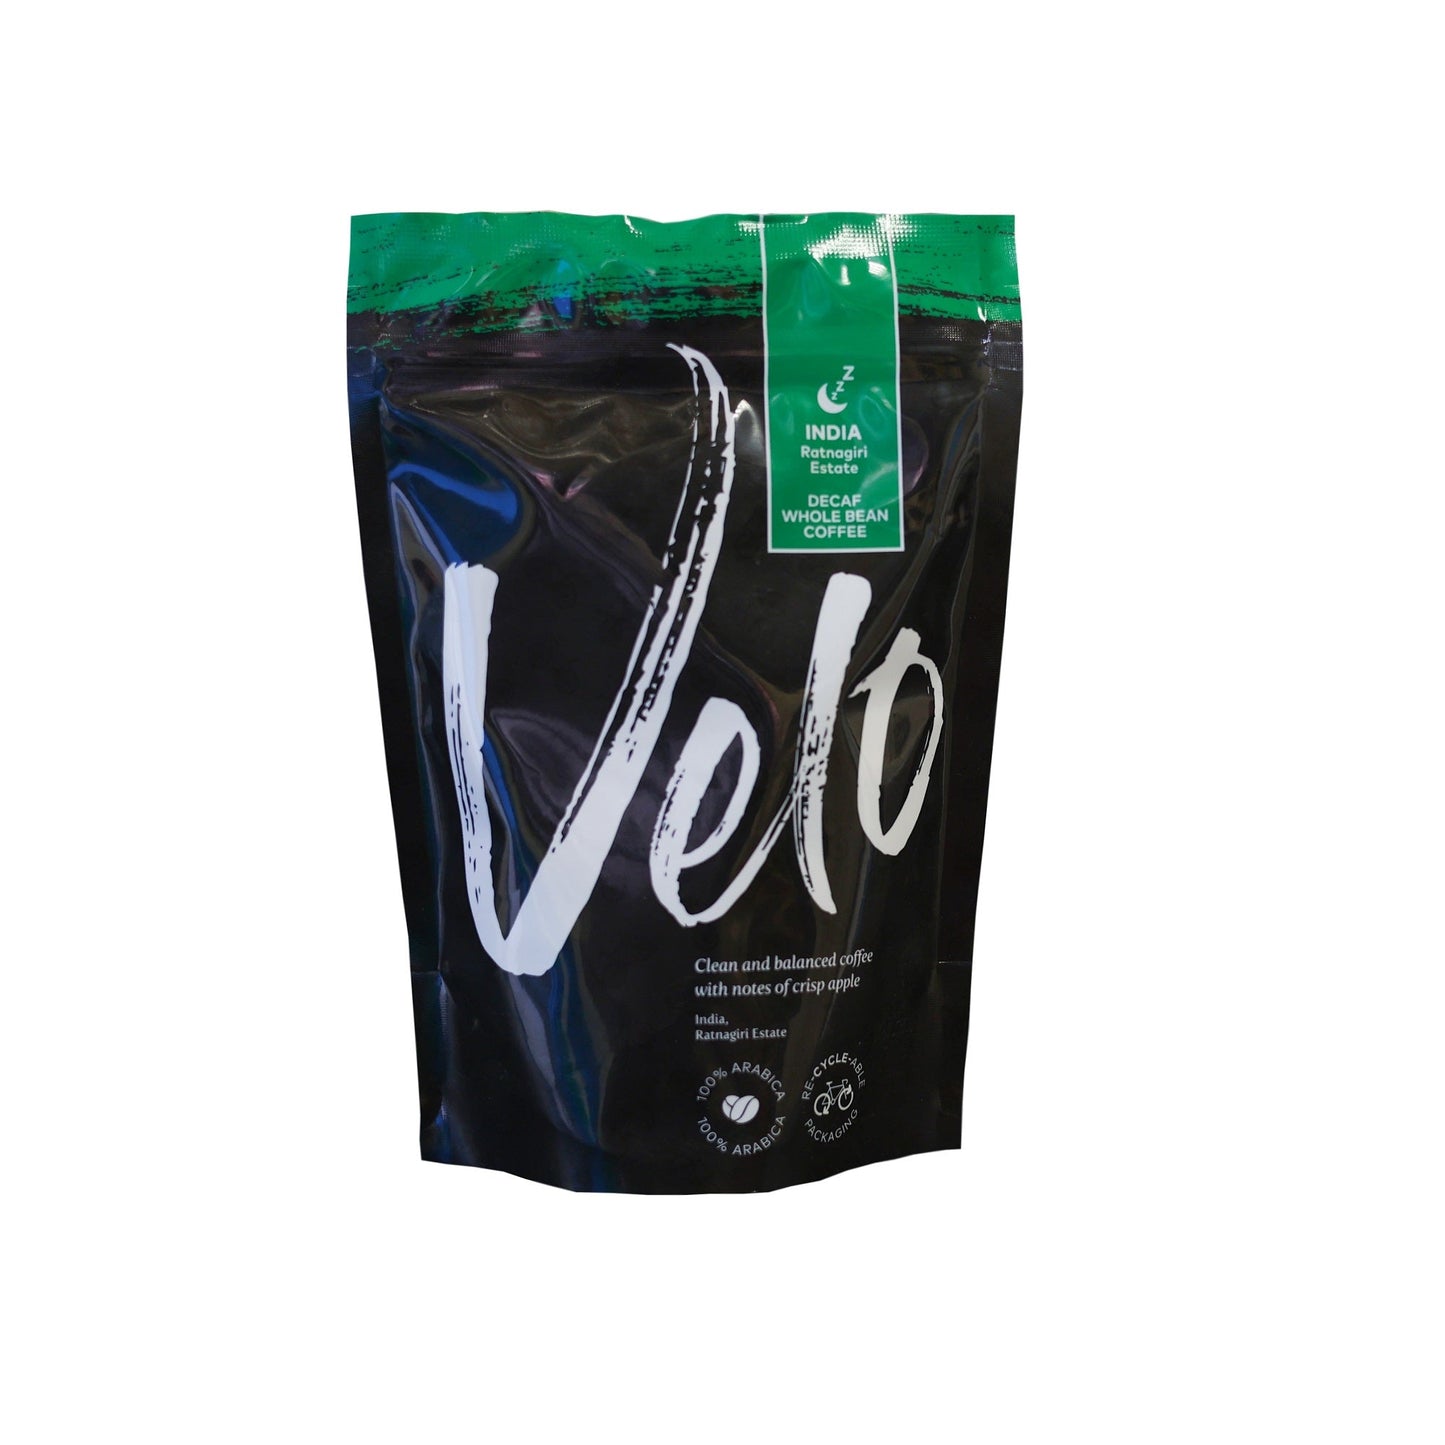 Load image into Gallery viewer, Velo Coffee Roasters - Ratnagiri Estate Decaf 200g Coffee Bag India - Velo Coffee Roasters
